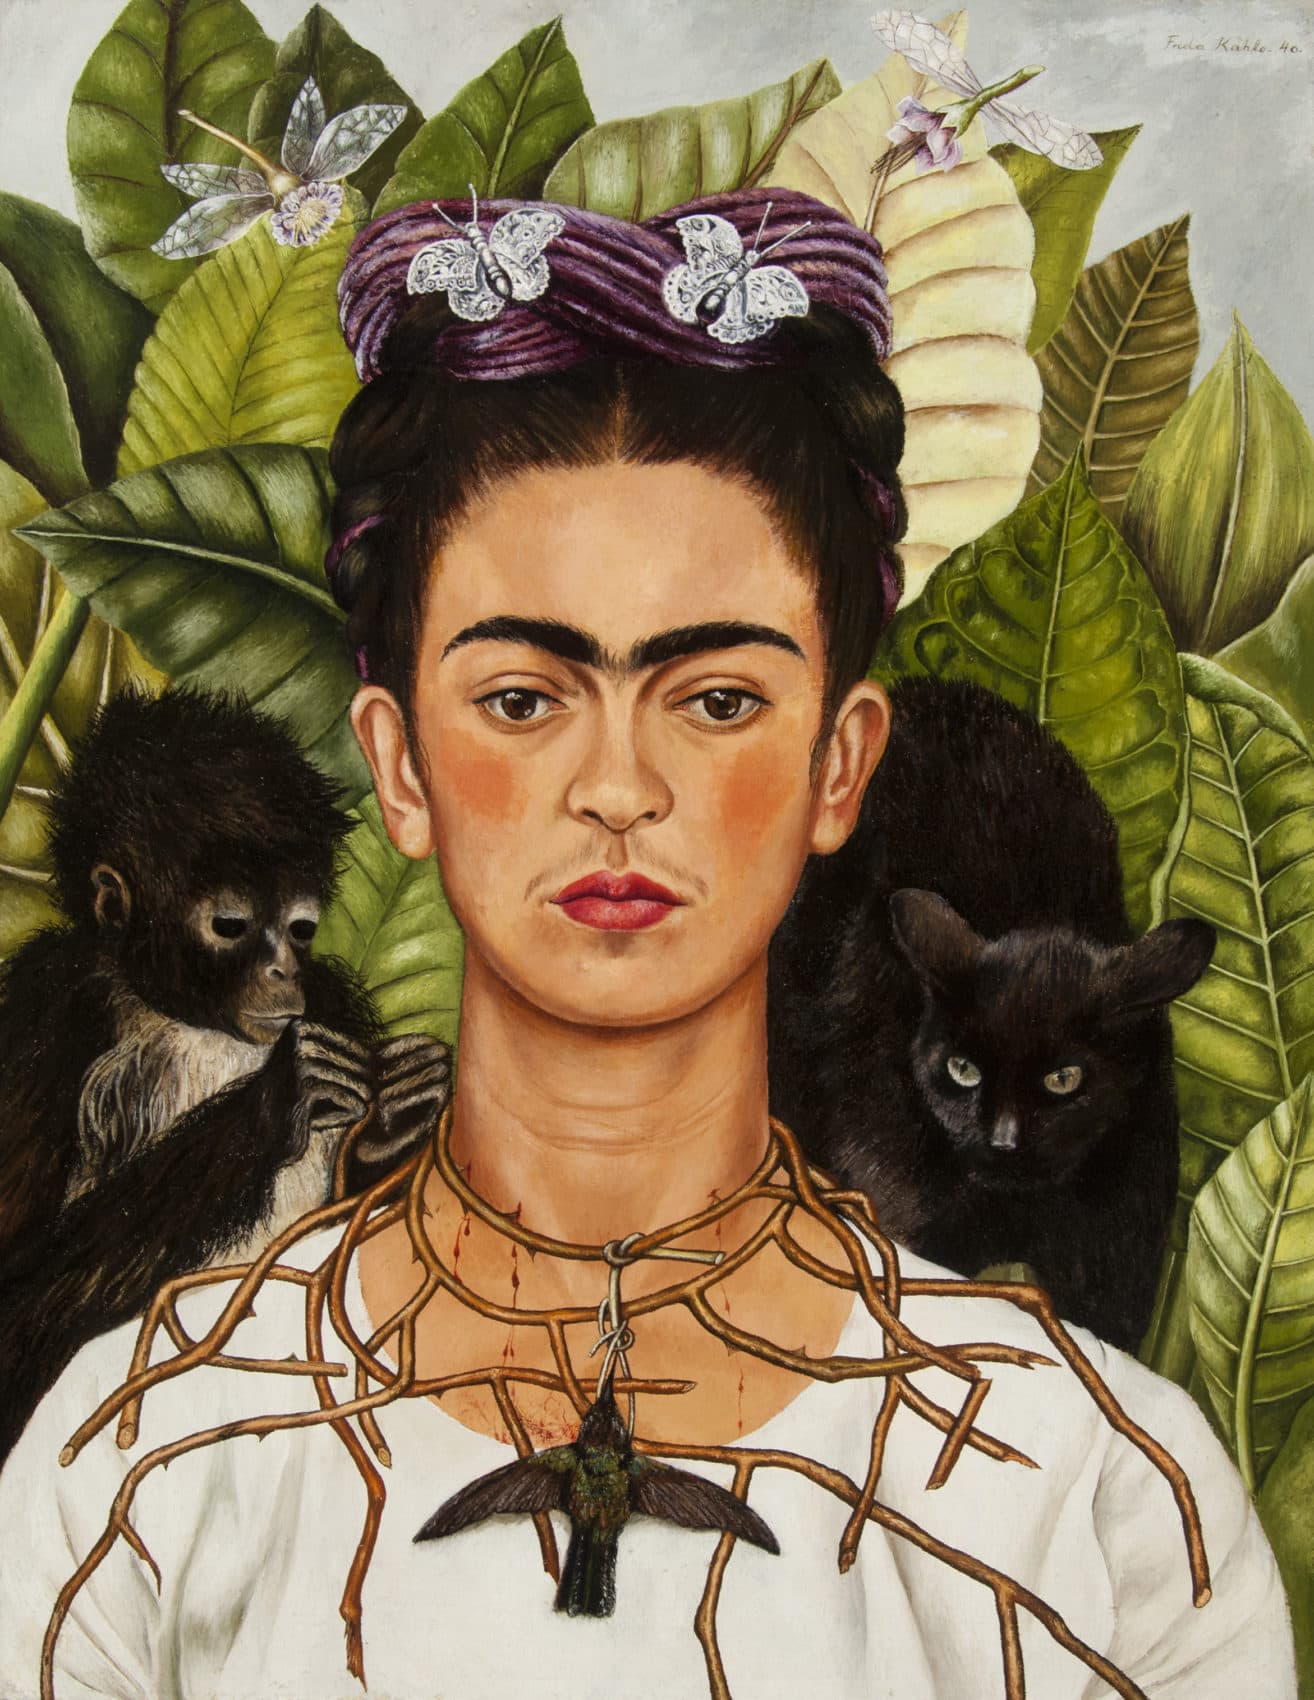 The Catholic art of Frida Kahlo